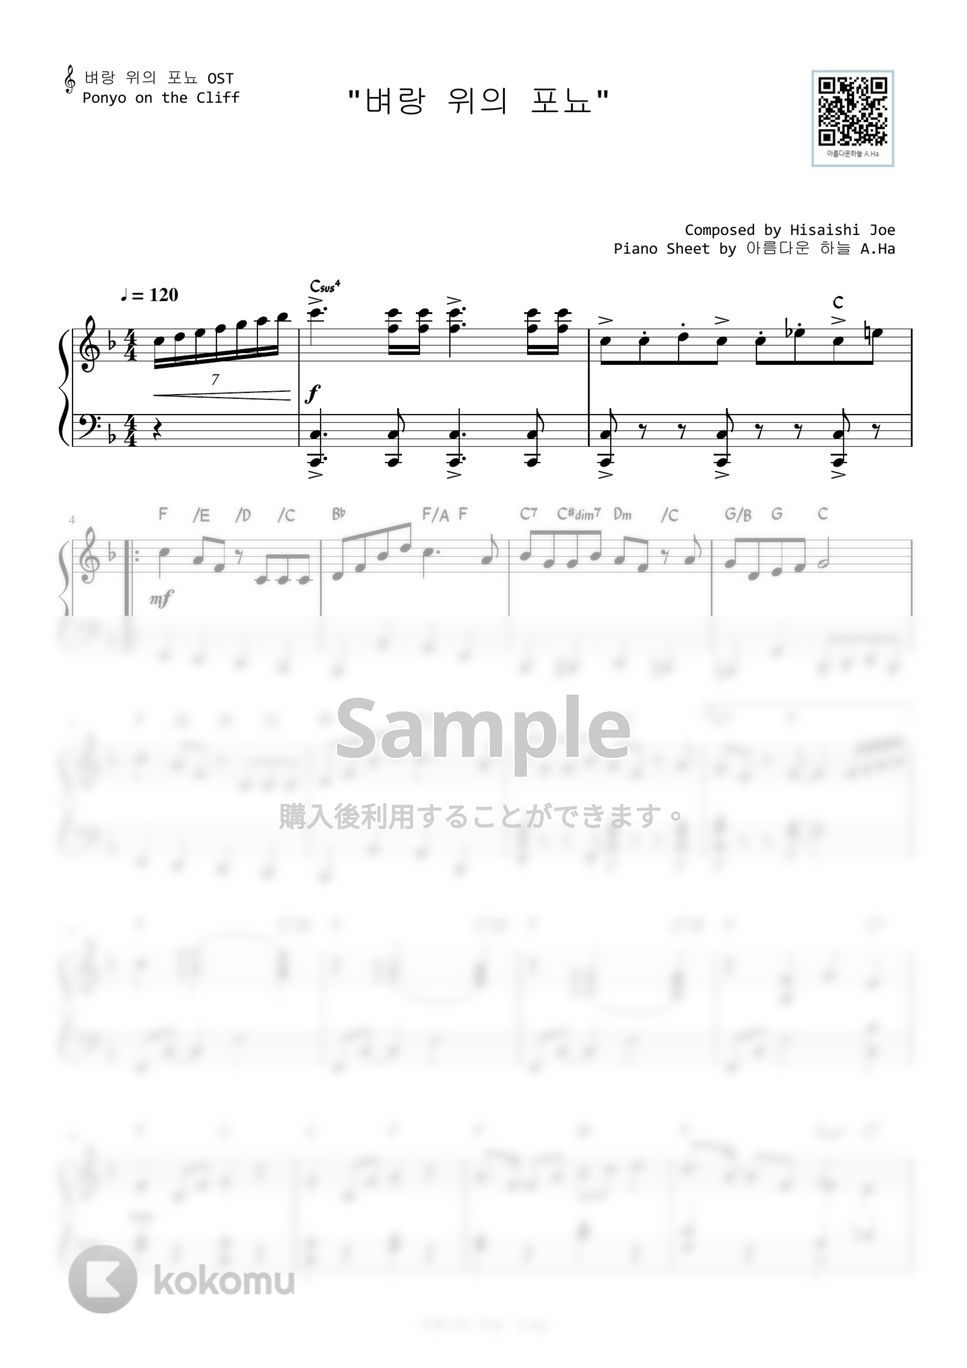 崖の上のポニョ - 崖の上のポニョ (Level 3 -Original Key) by A.Ha